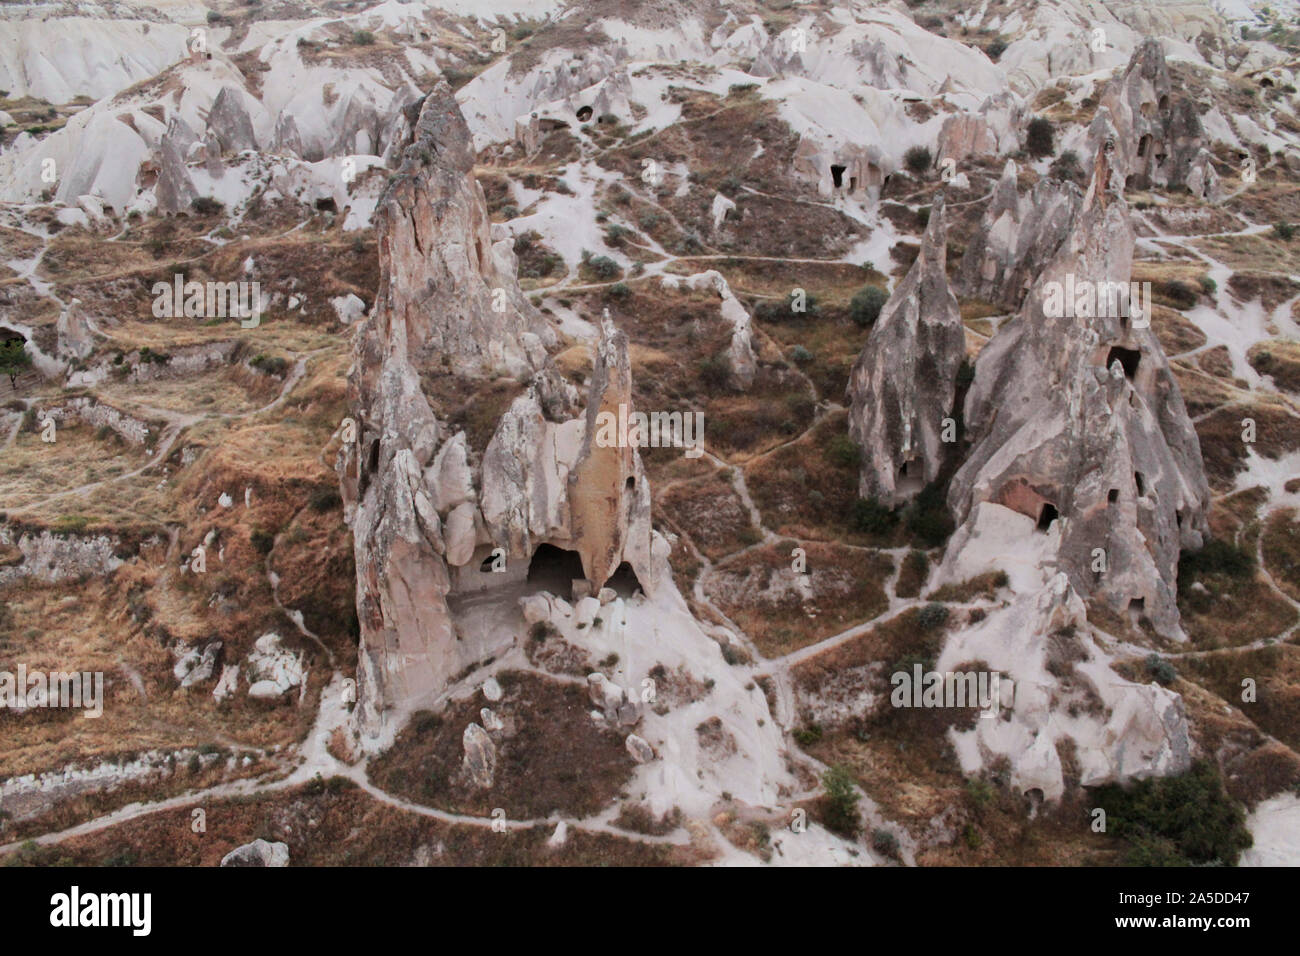 Maisons grotte dans les cônes des collines de sable, entouré par des sentiers. La photographie de paysage de destination touristique populaire - Cappadoce, Turquie Banque D'Images